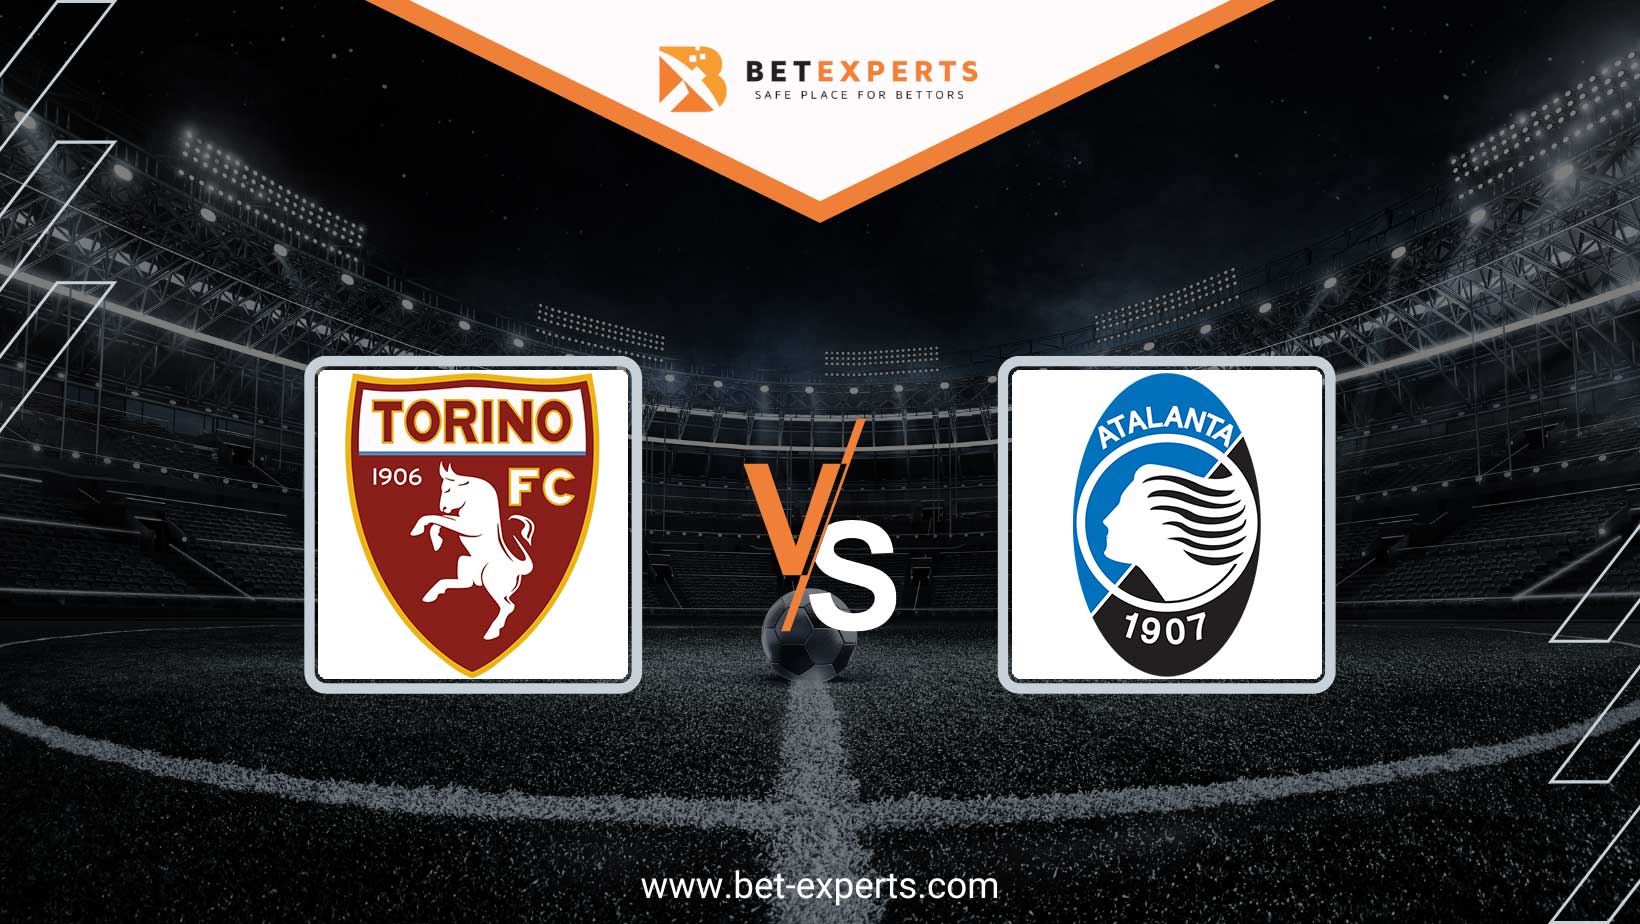 Torino vs Atalanta 4/12/2023 19:45 Futebol eventos e resultados